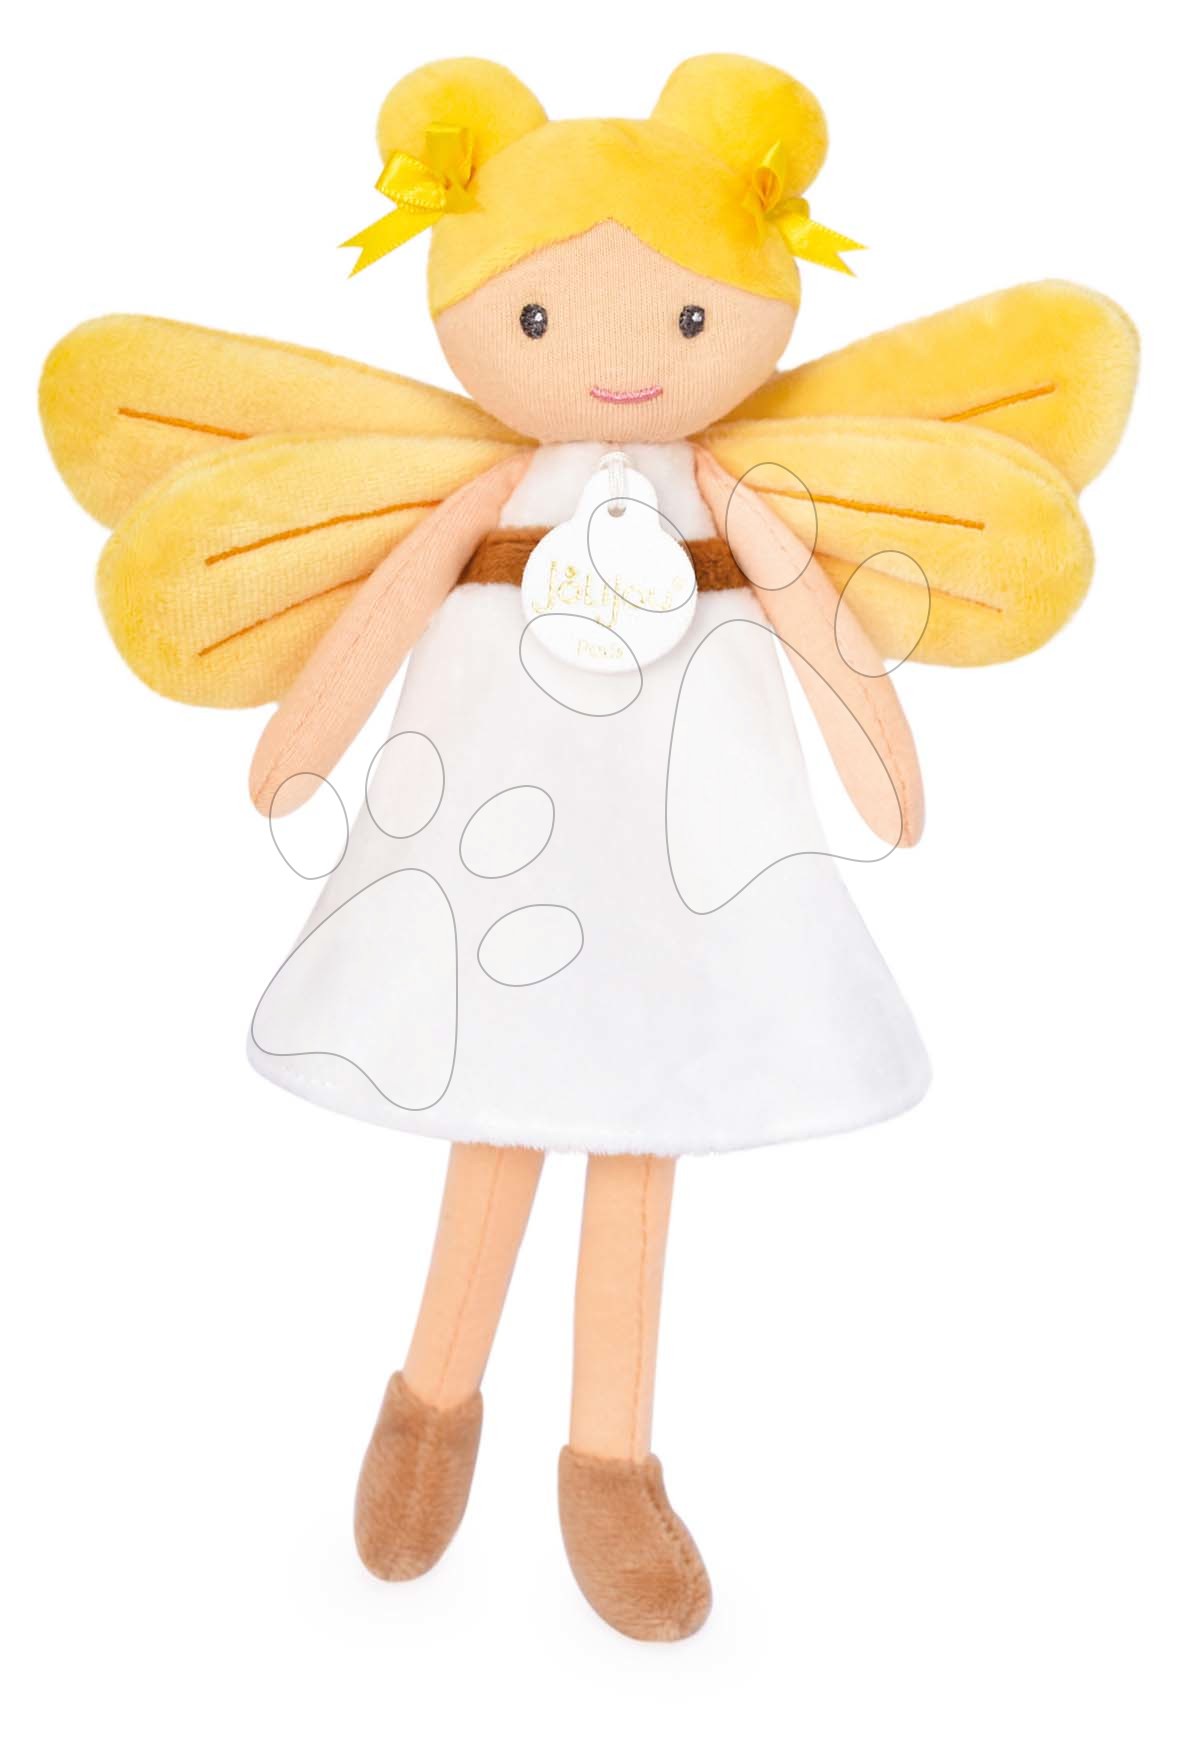 E-shop Bábika víla Aurore Forest Fairies Jolijou 25 cm v bielych šatách so žltými krídlami z jemného textilu od 5 rokov